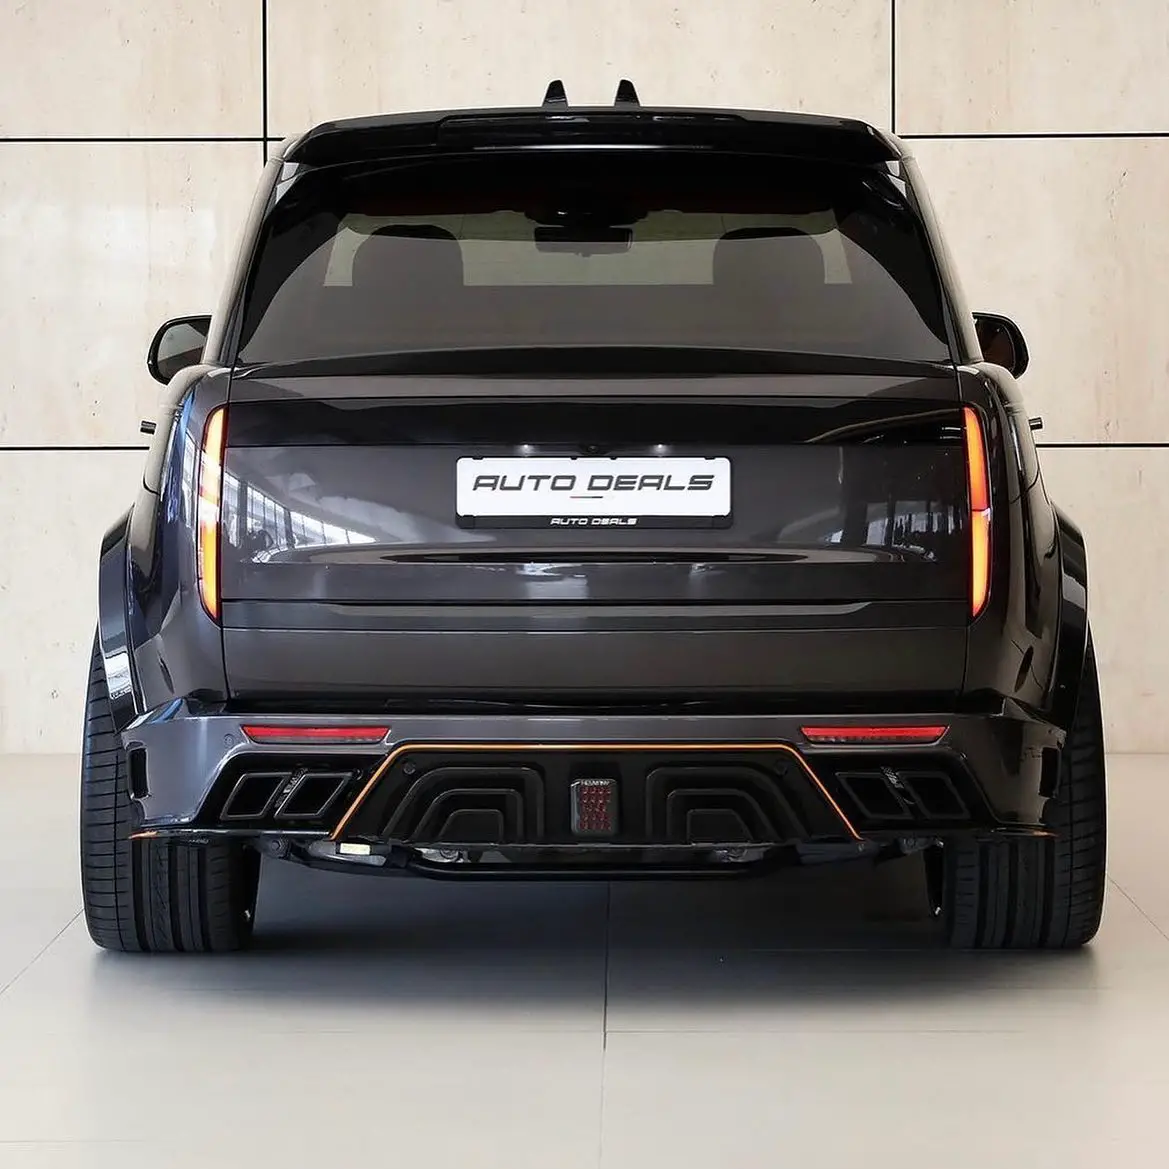 keyvany widebody-carbon-kit am range rover l460 suv!